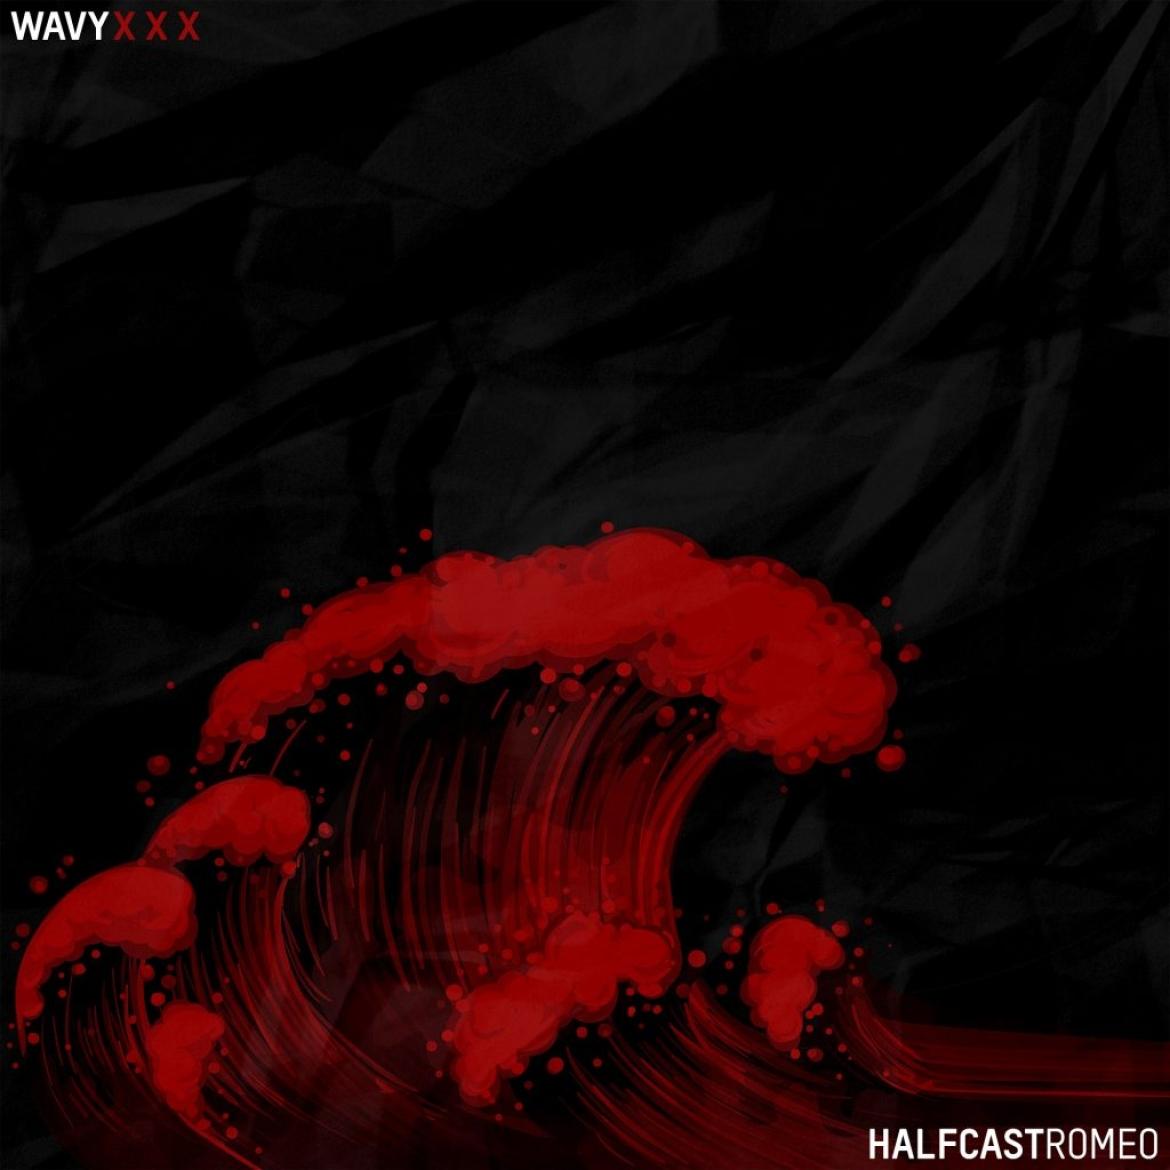 Halfcastromeo - wavy xxx